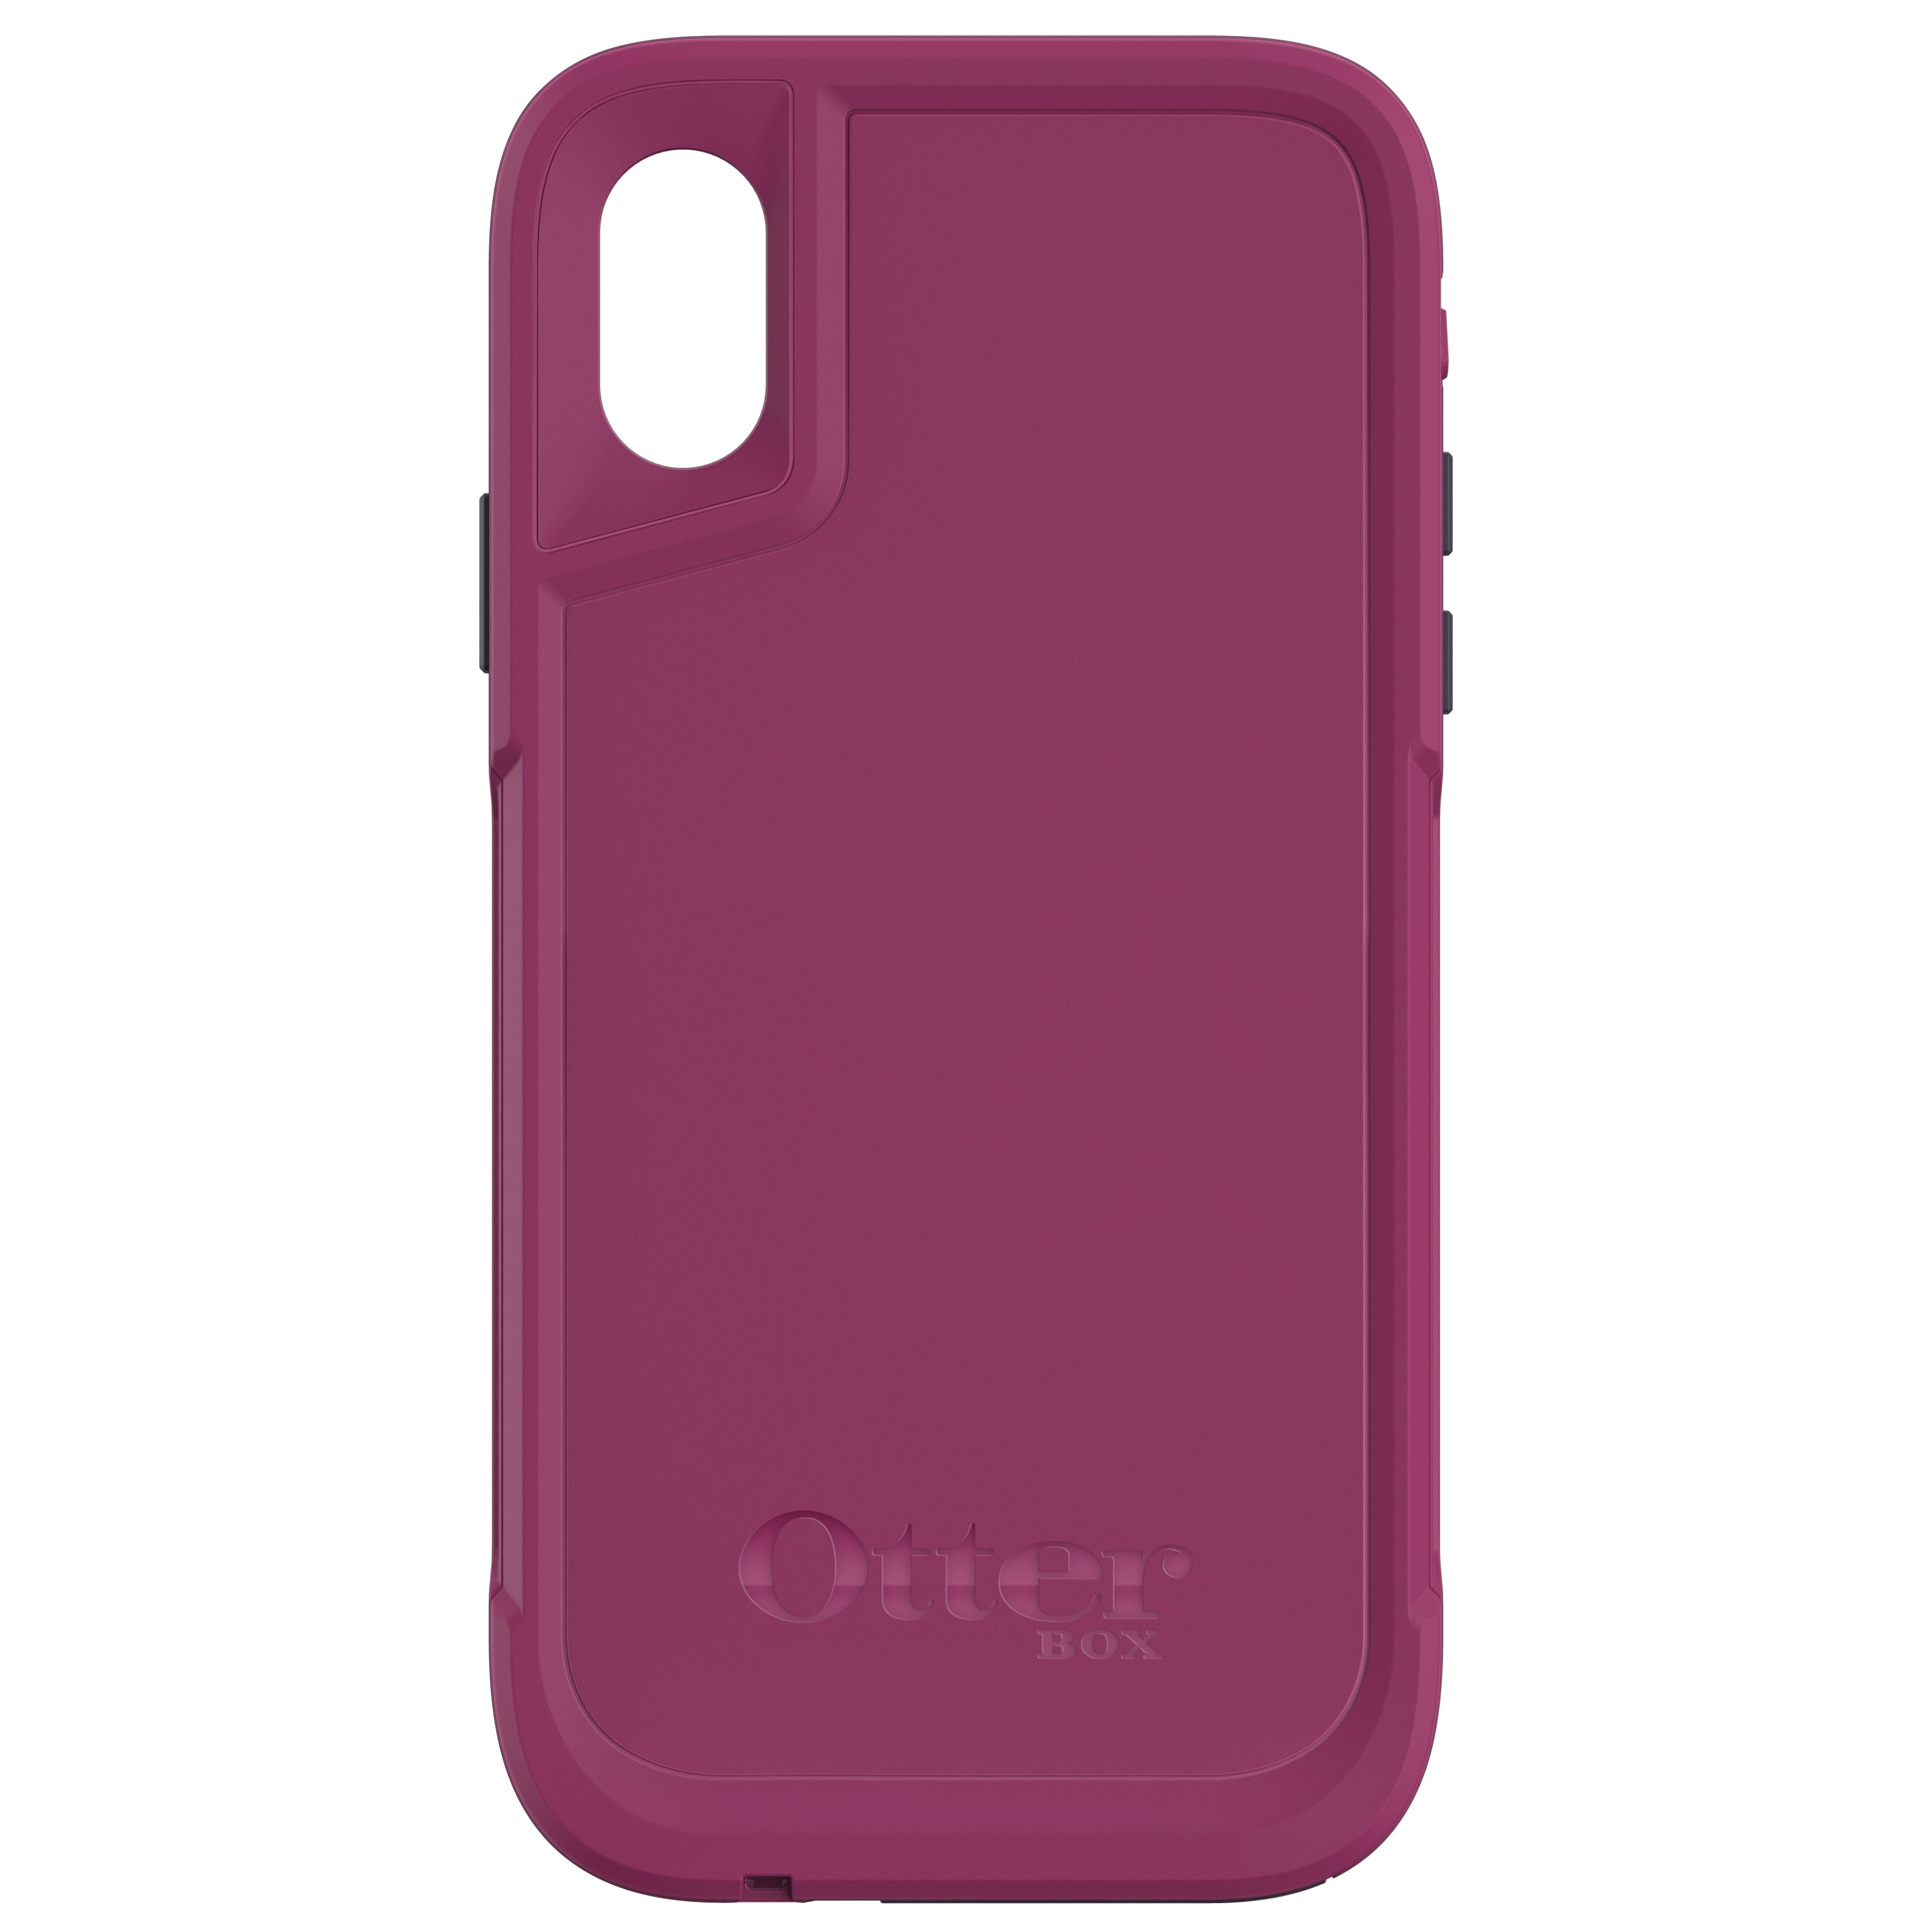 OtterBox Pursuit Series Case for iPhone X, Black - Walmart.com